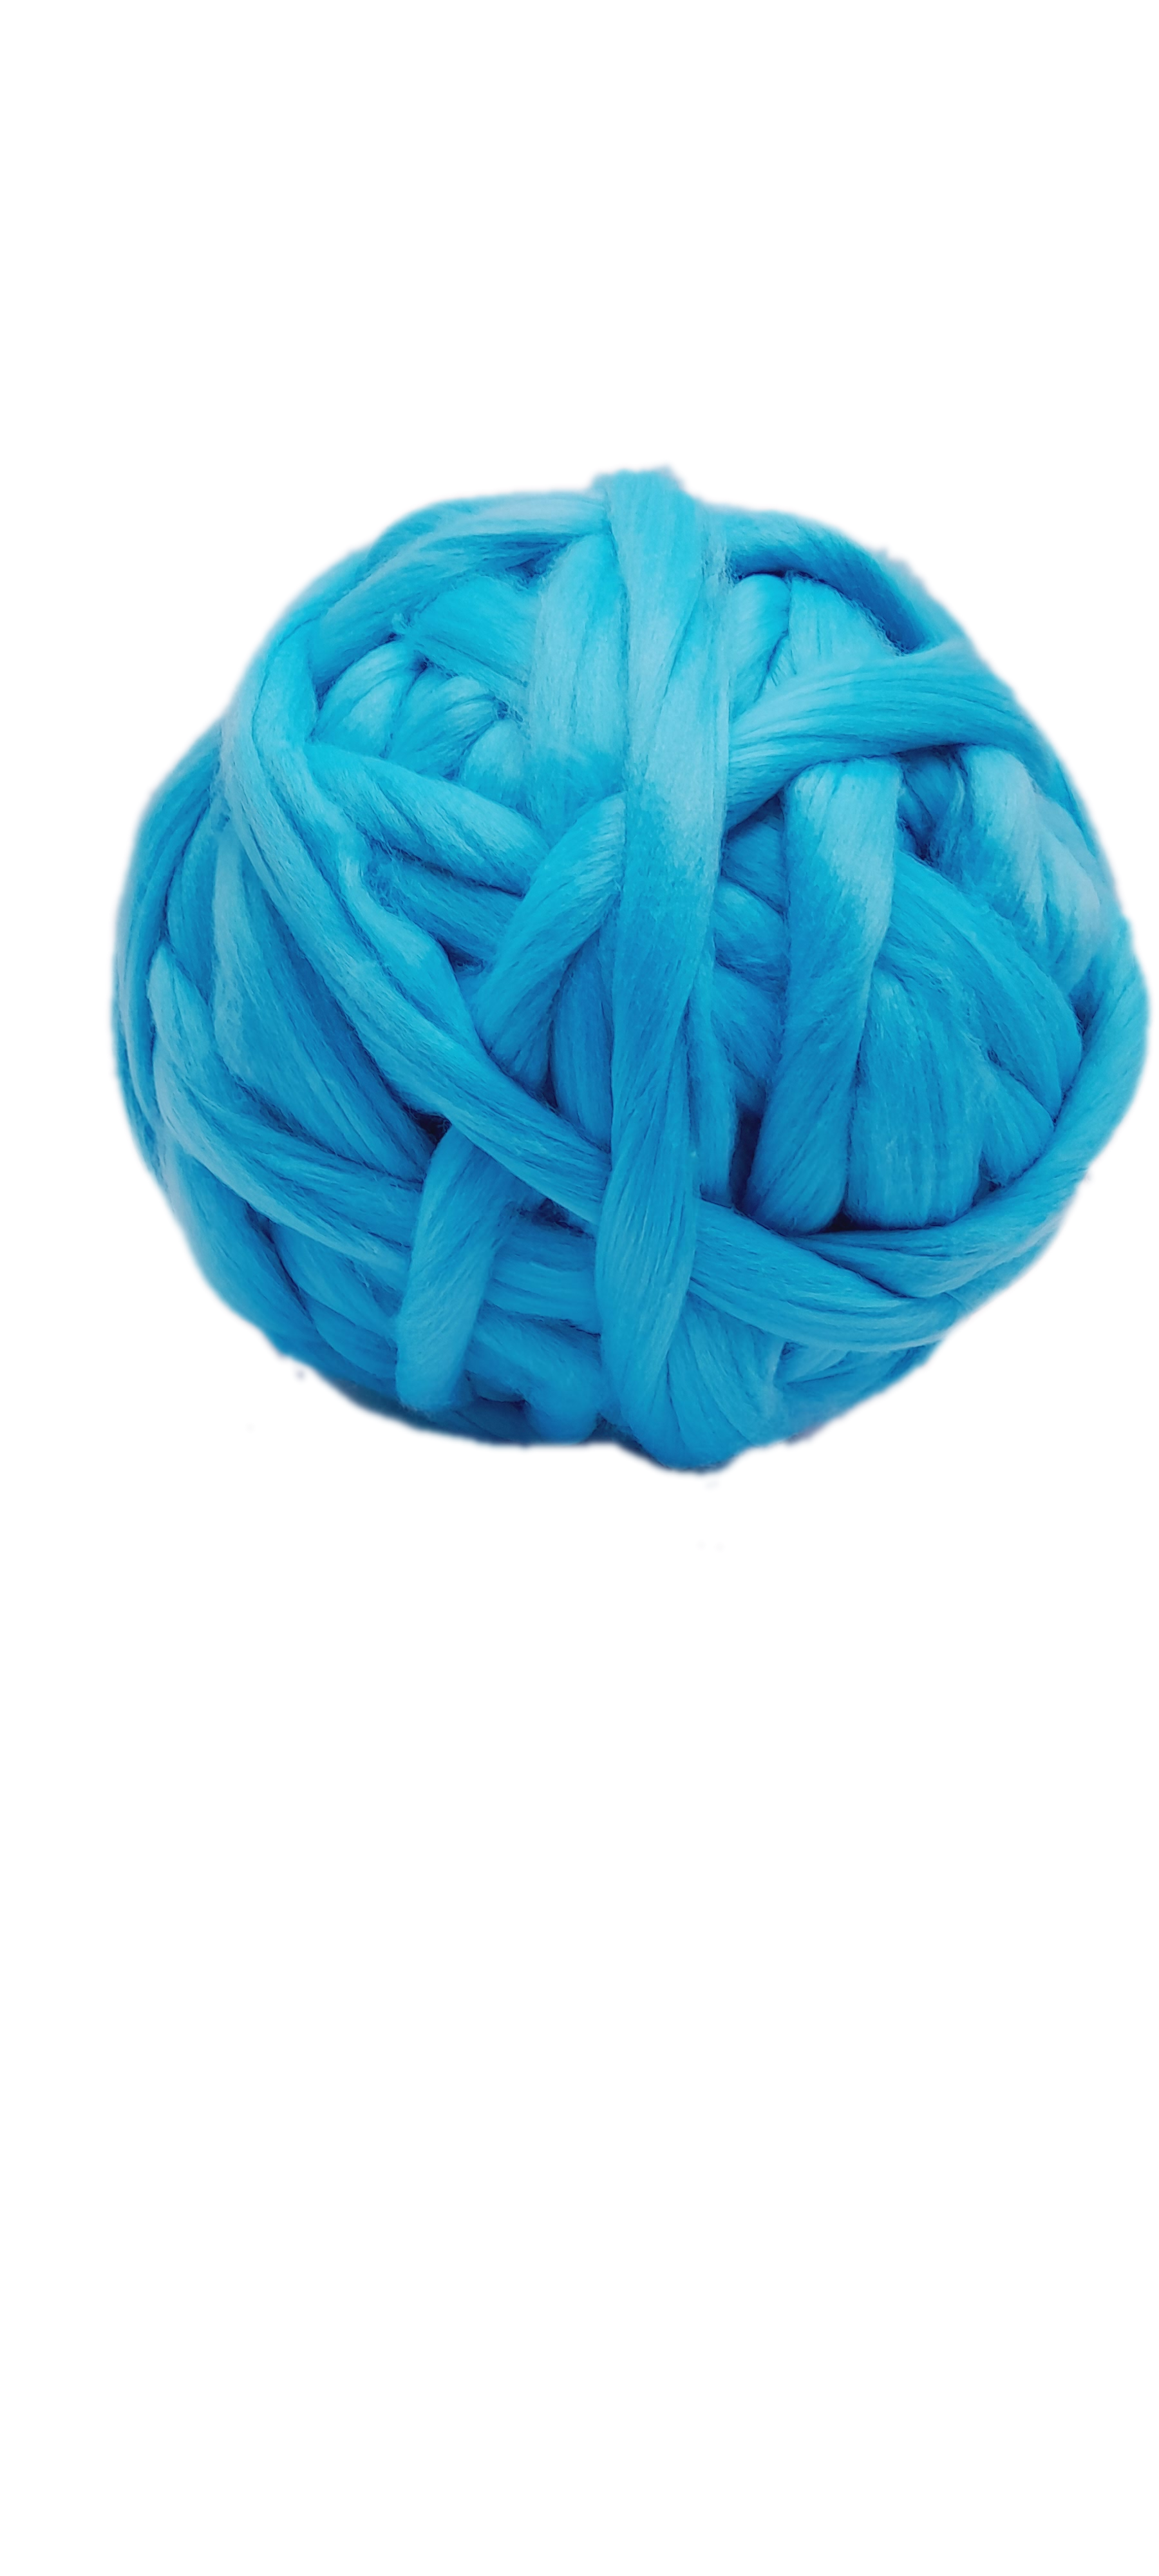 Acrylic Yarn for Arm Knitting – BaaBaaBandits